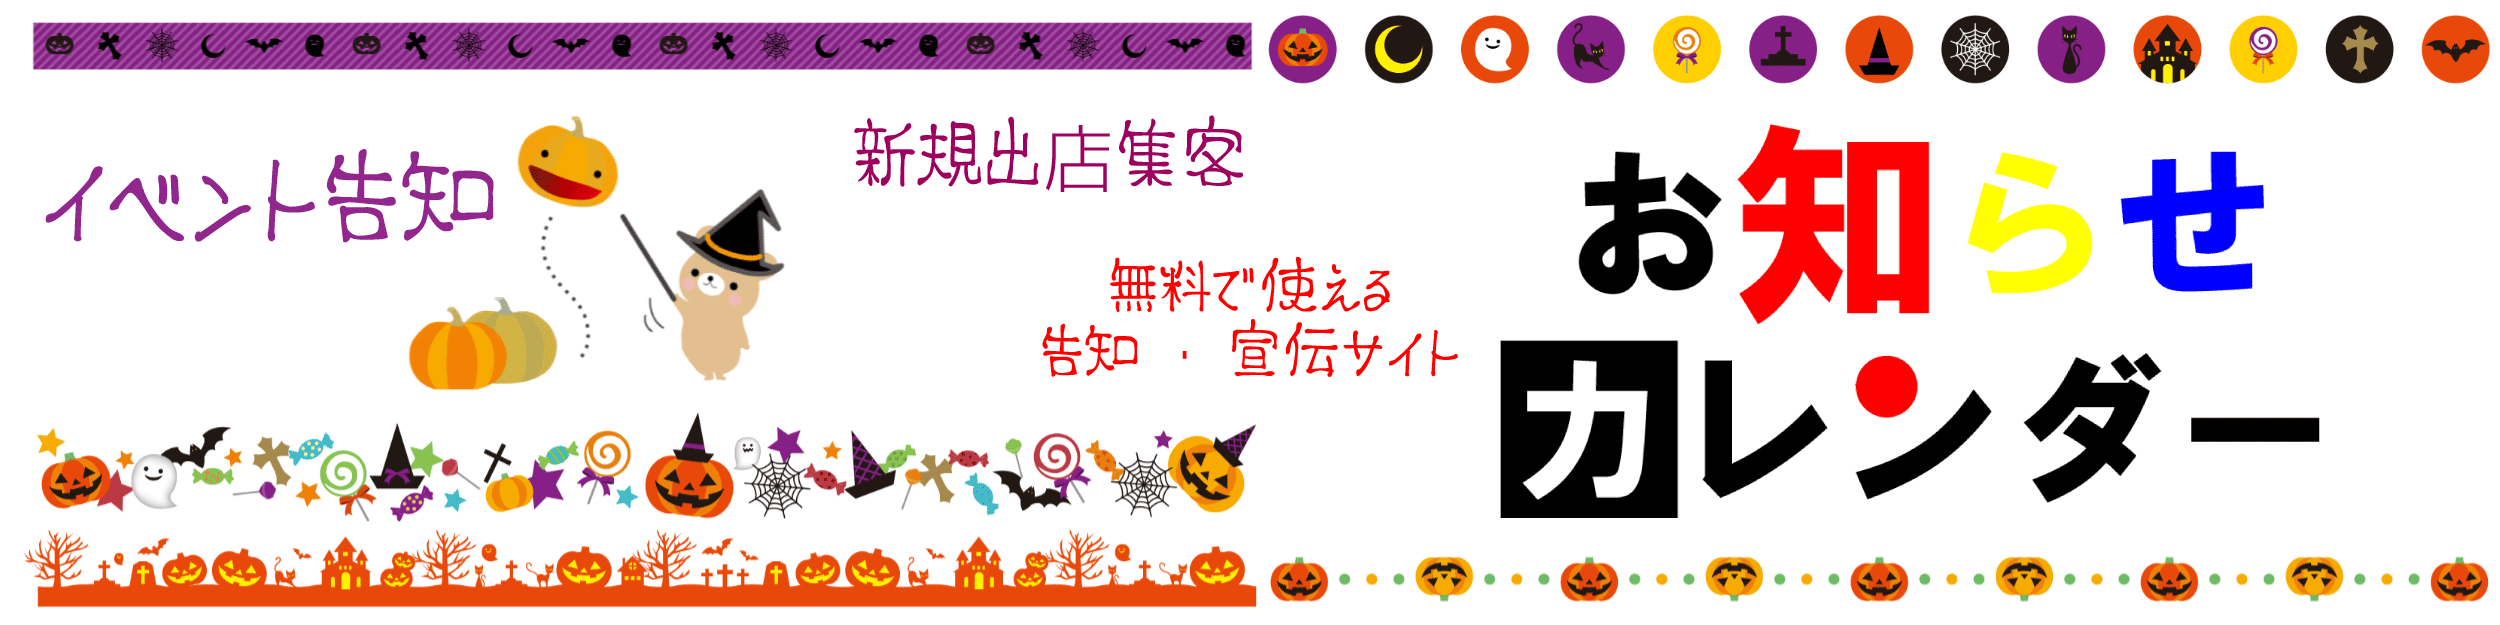 恵比寿文化祭2017 開催 イベント告知サイト お知らせカレンダー